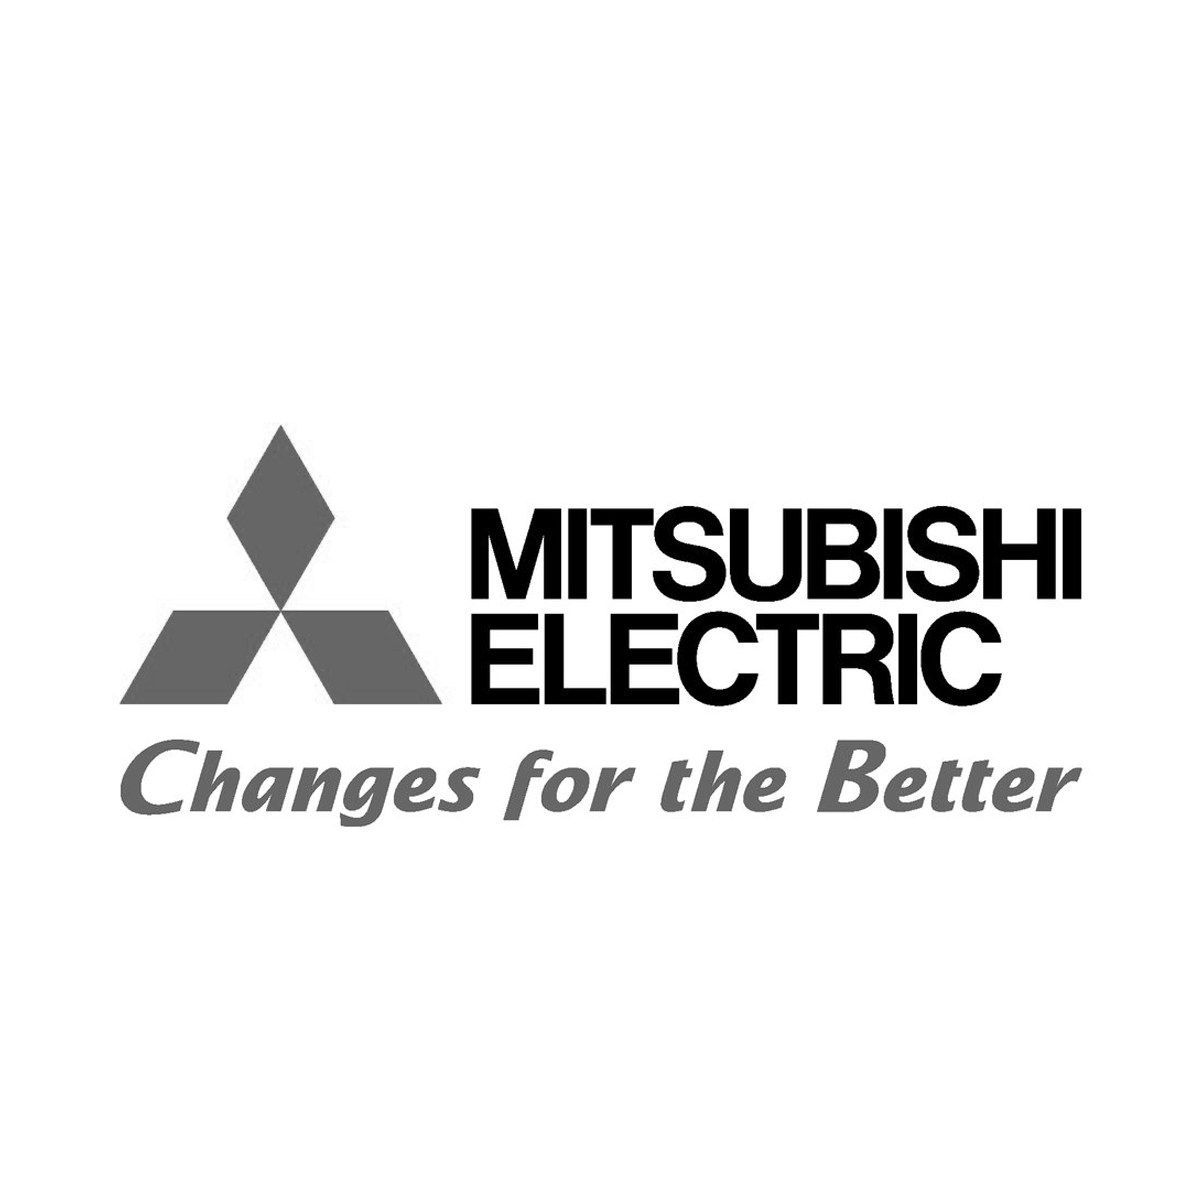 Mitsubishi Electric Research Centre